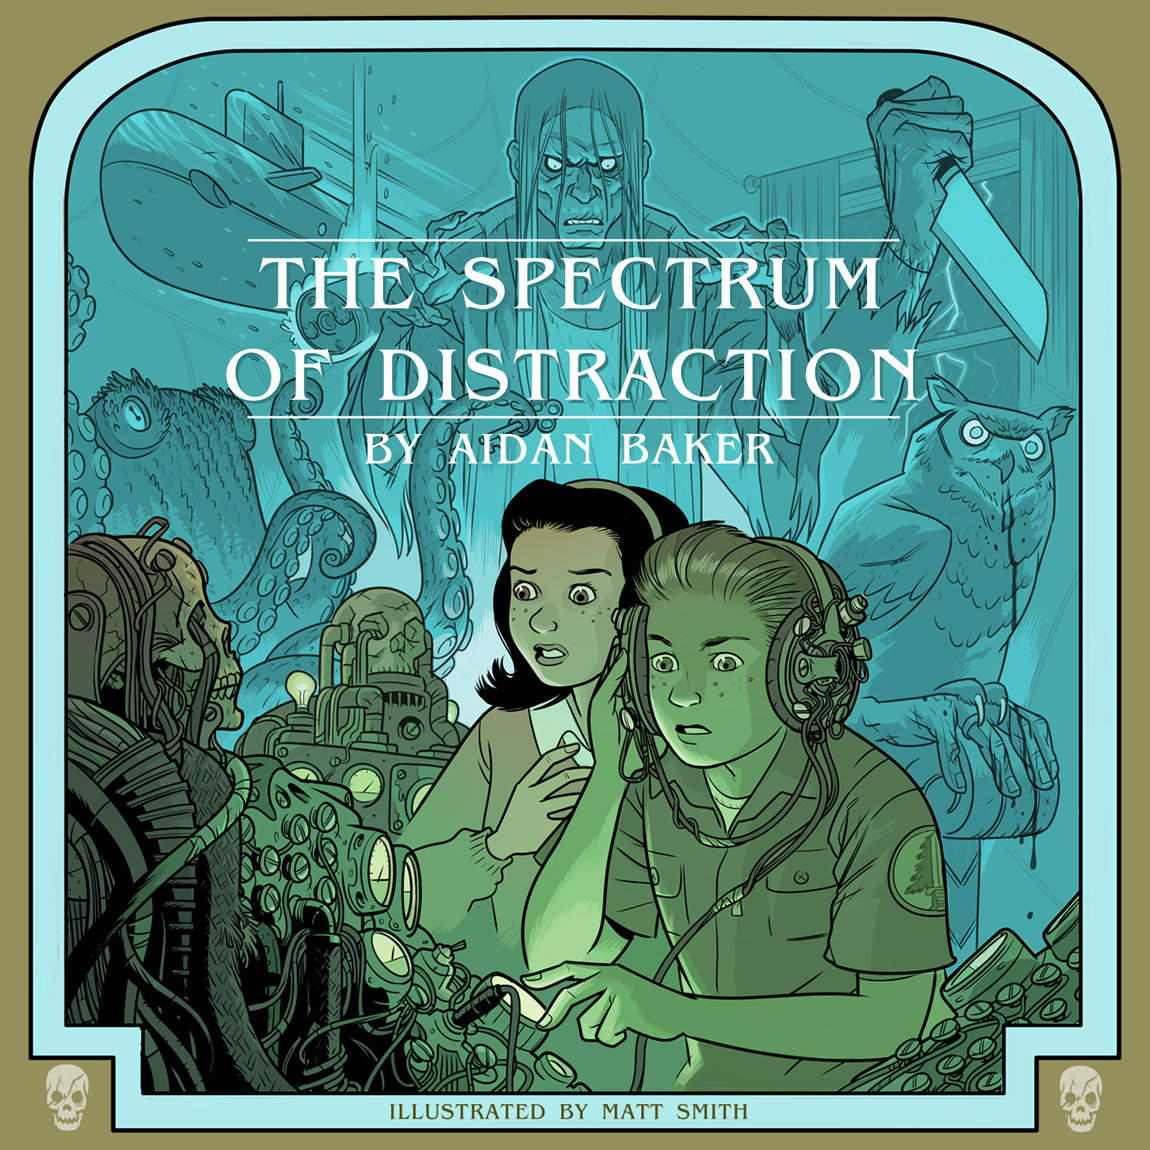 Aidan Baker - The Spectrum Of Distraction (2012)